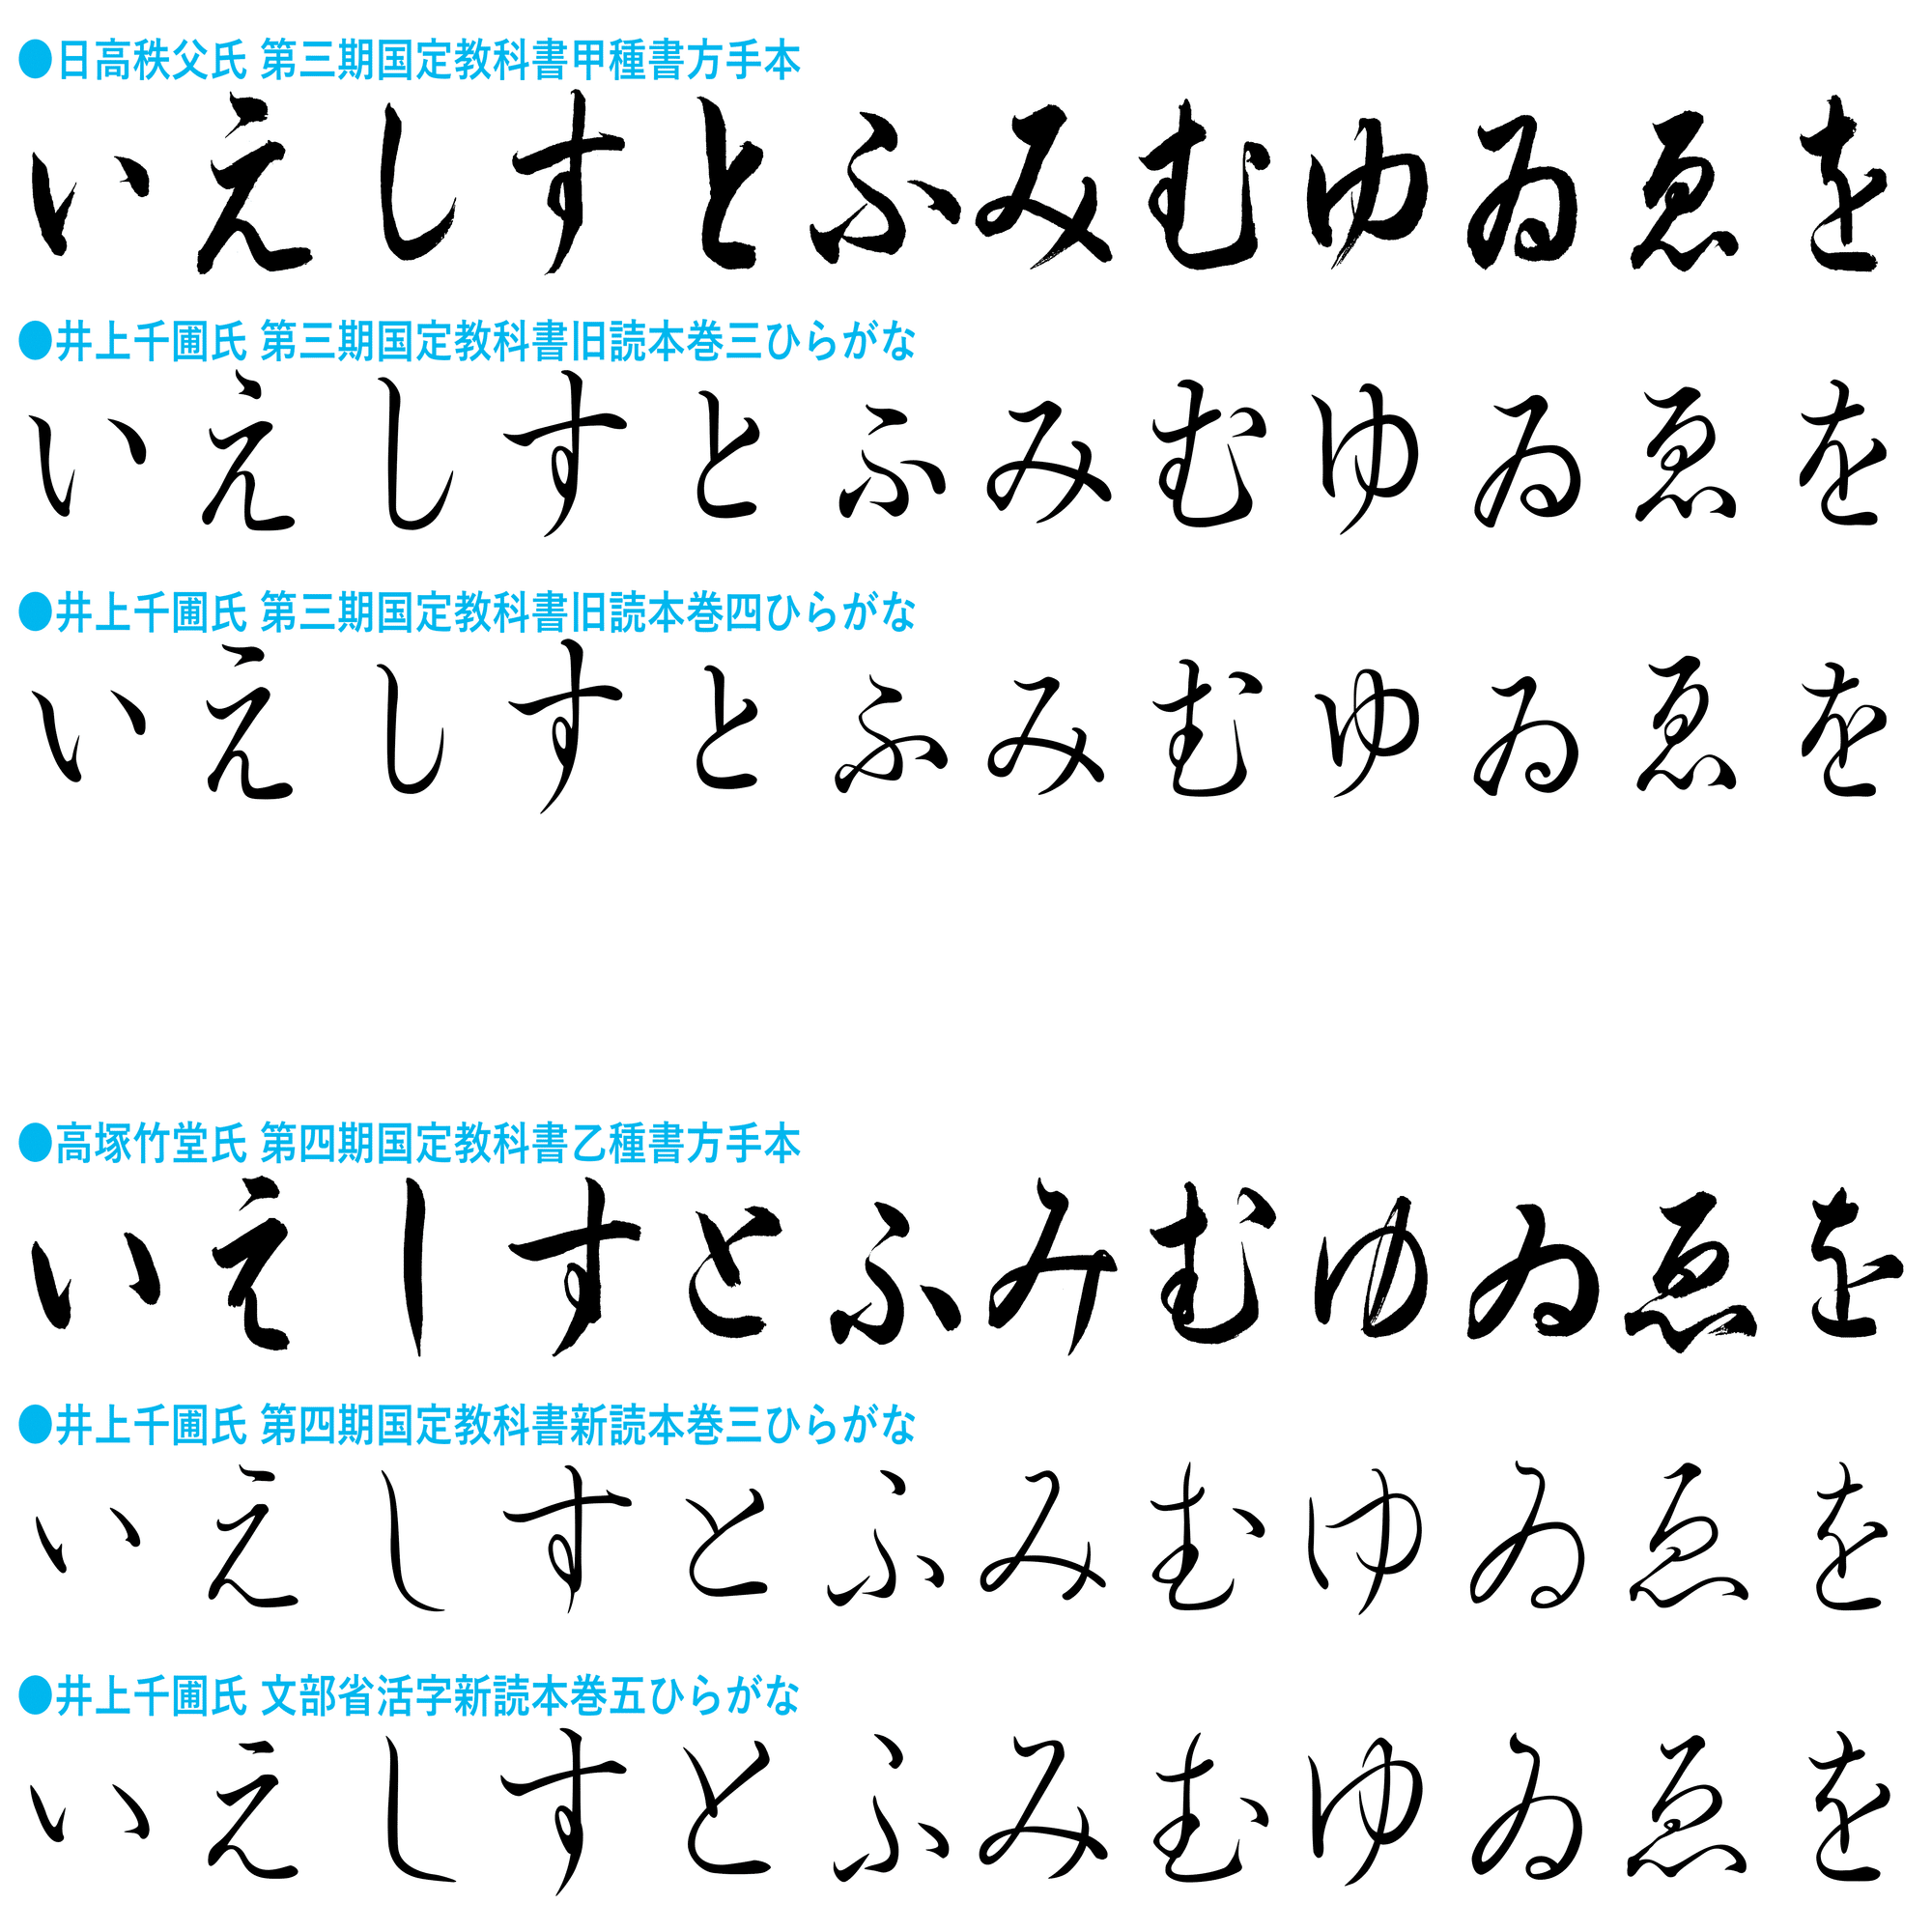 活字 初号 ひらがな カタカナ ゴシック体 - 素材/材料